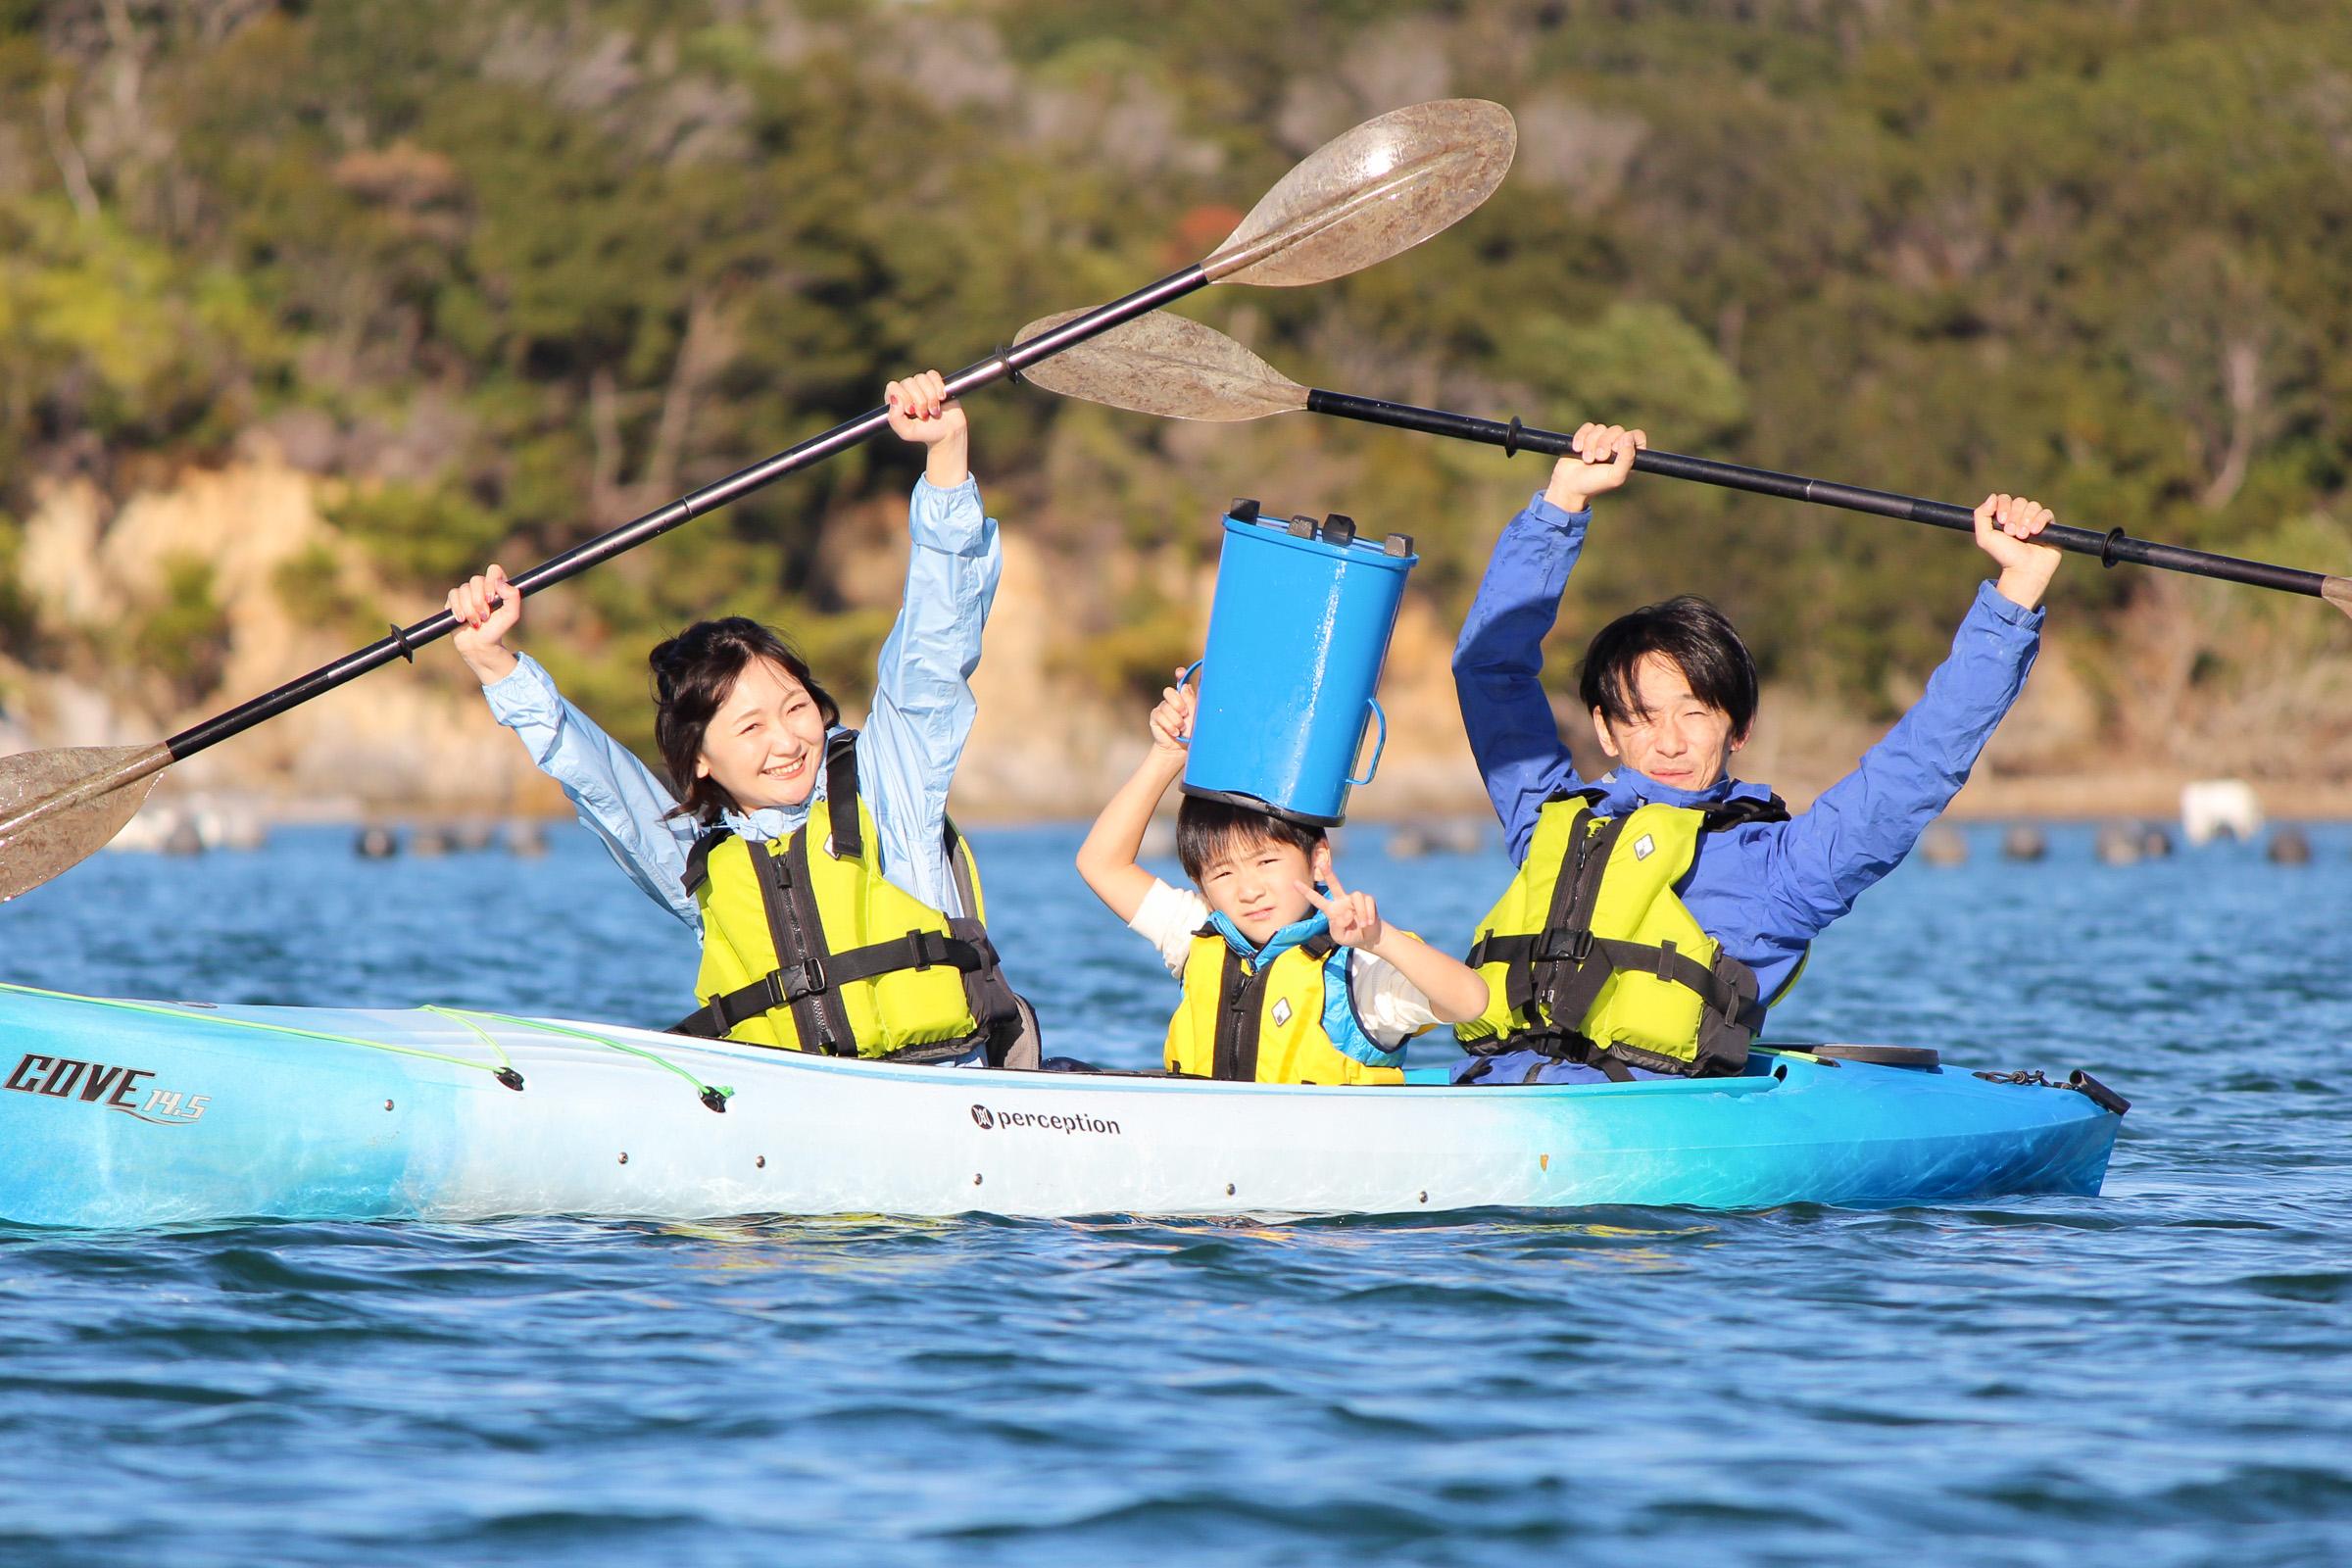 在志摩自然学校的海上皮艇旅行中悠闲地周游志摩的英虞湾!让我们体验蓝天和大海的舒适!